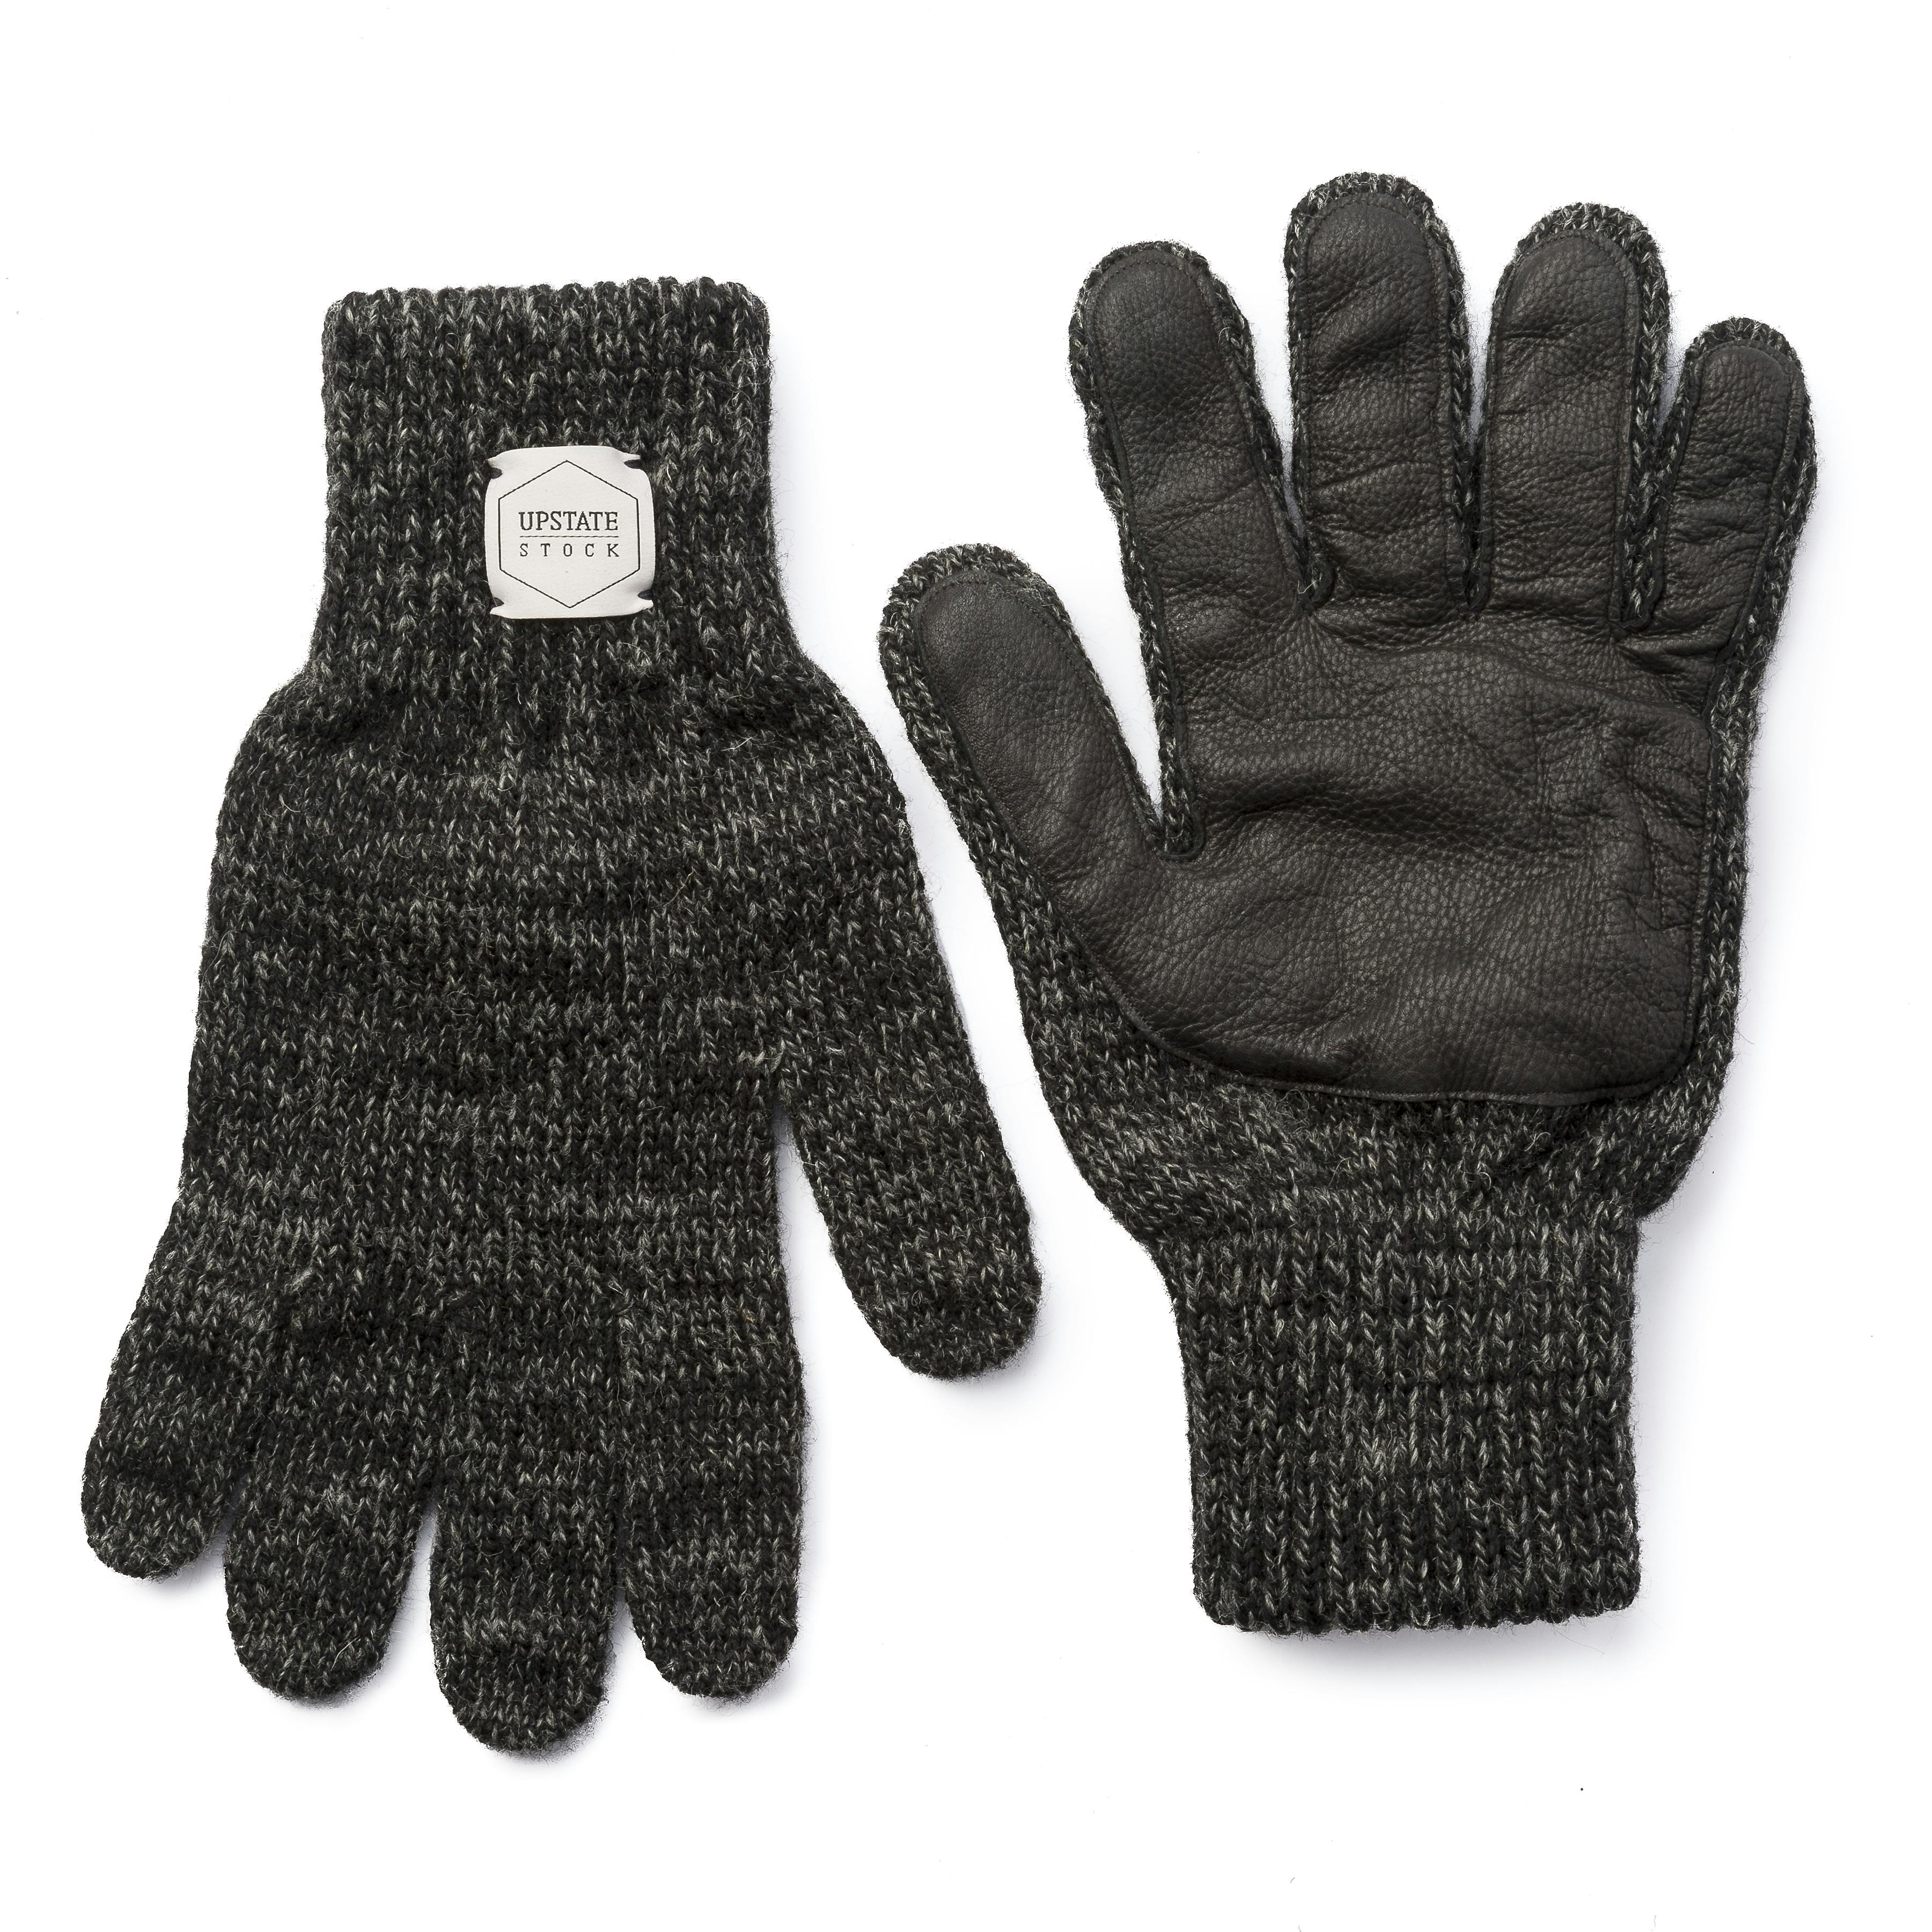 Upstate Stock Full-Finger Melange Wool Glove